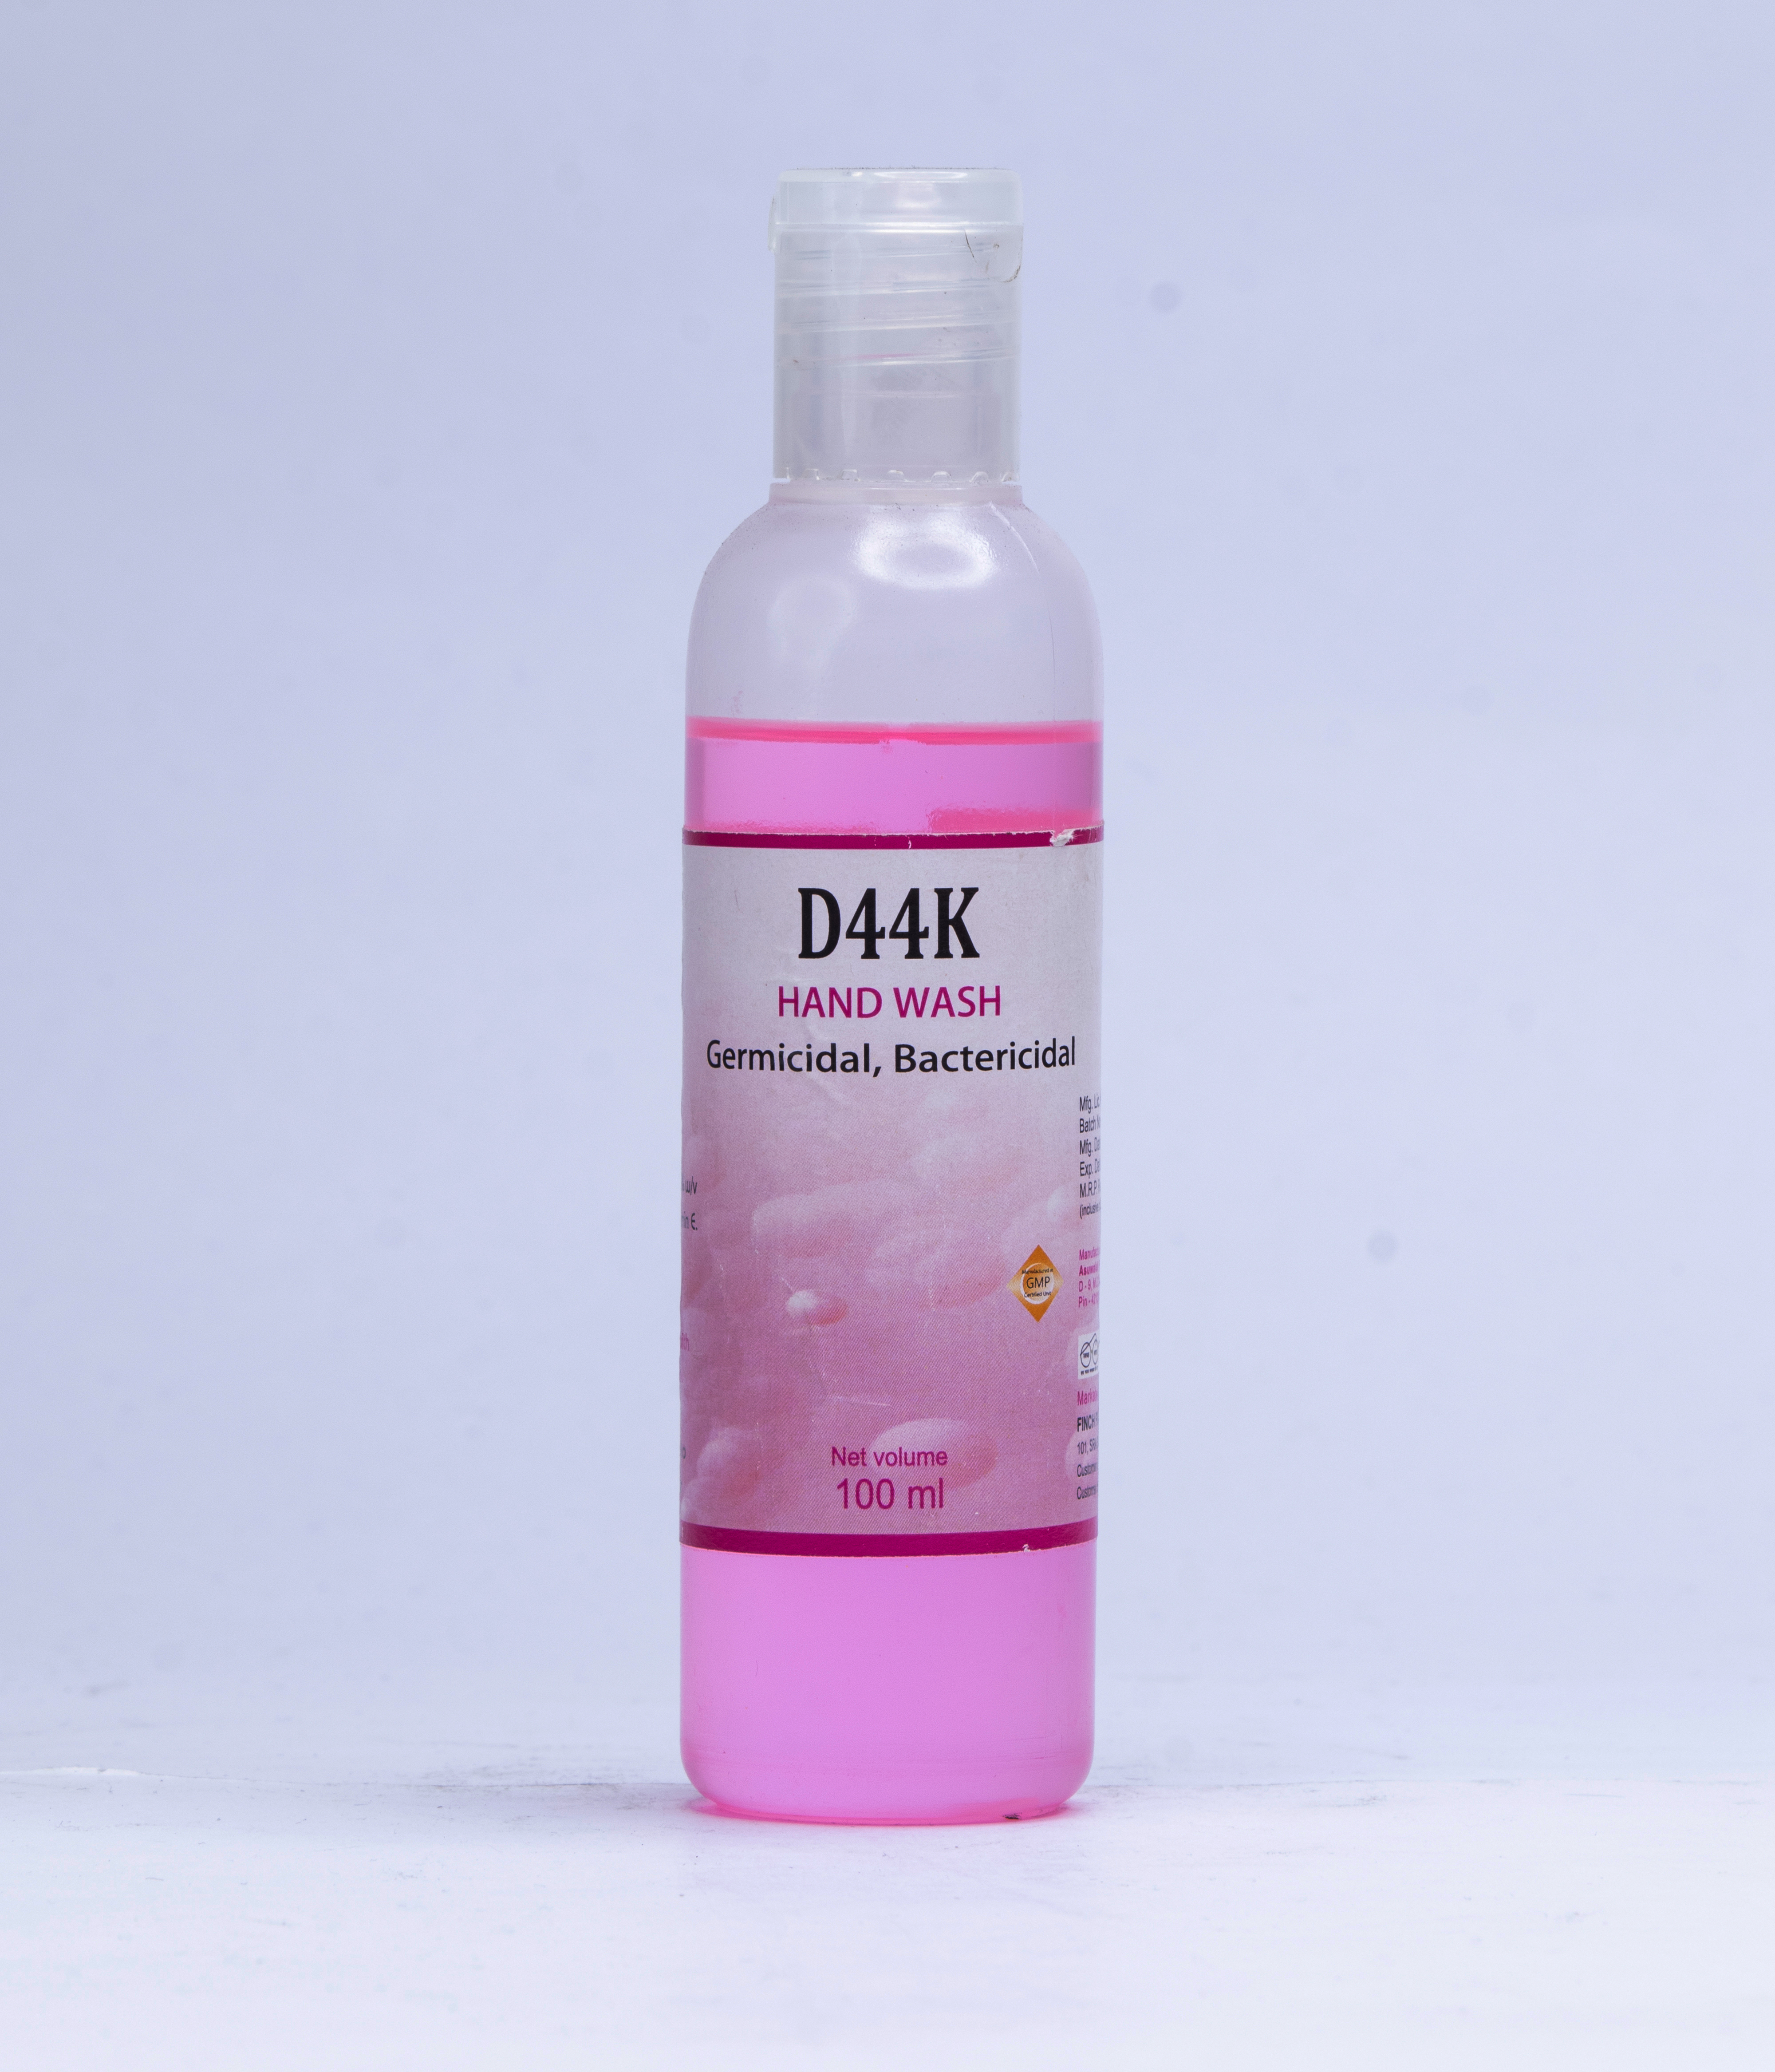 D44K - Hand Wash